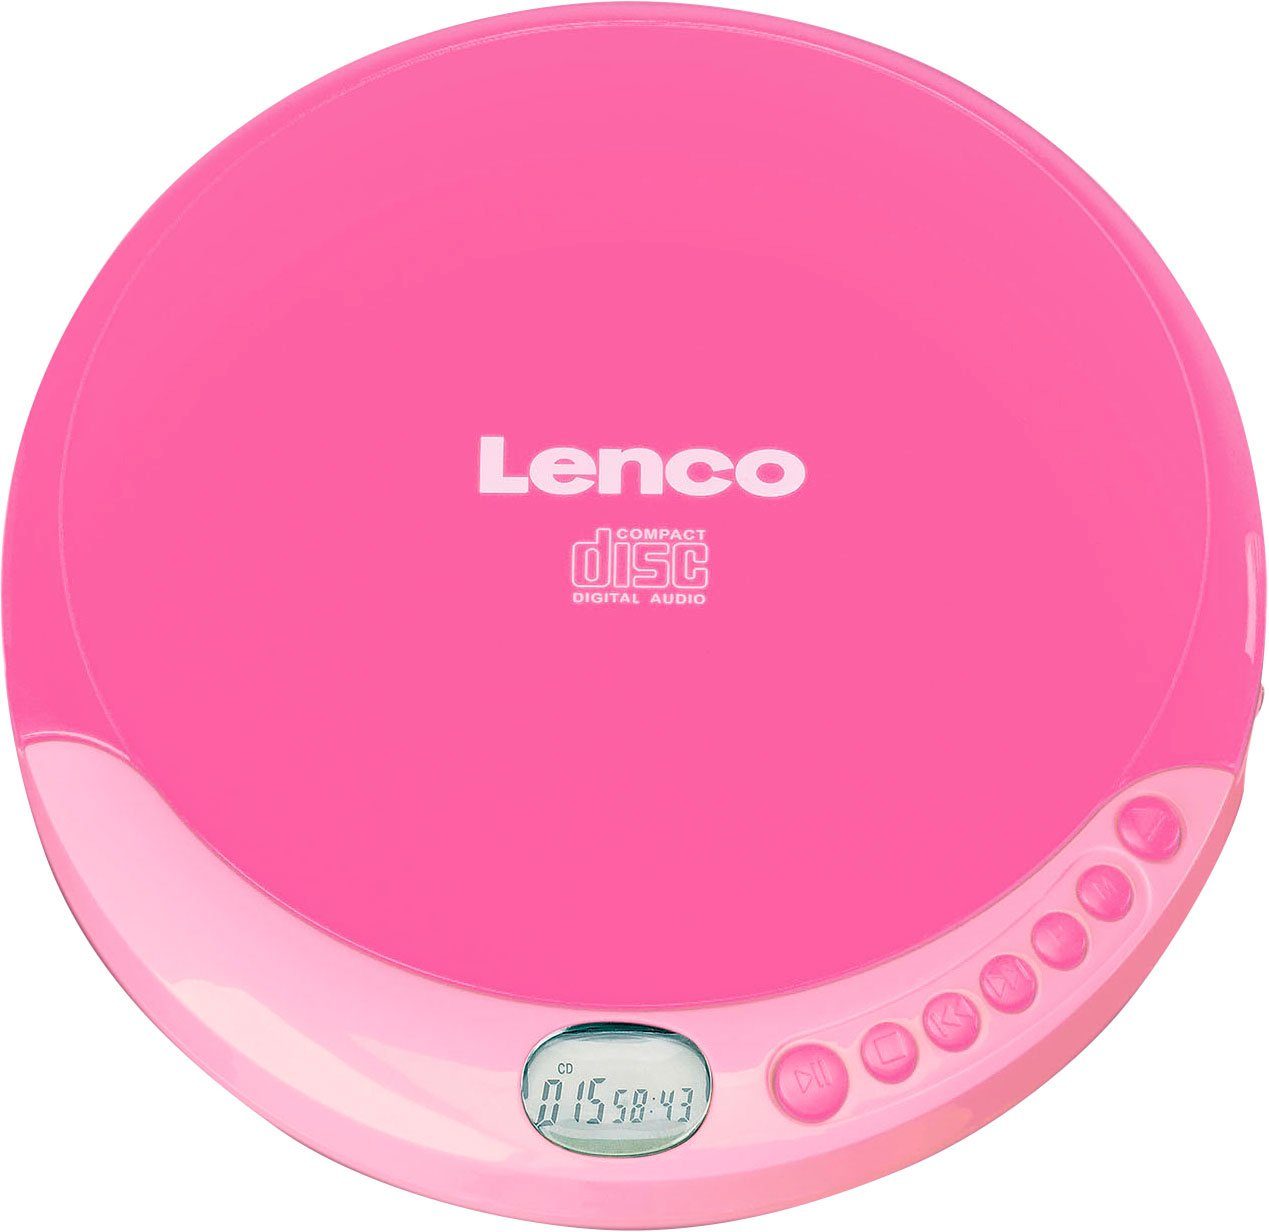 CD-011 Lenco rosa CD-Player